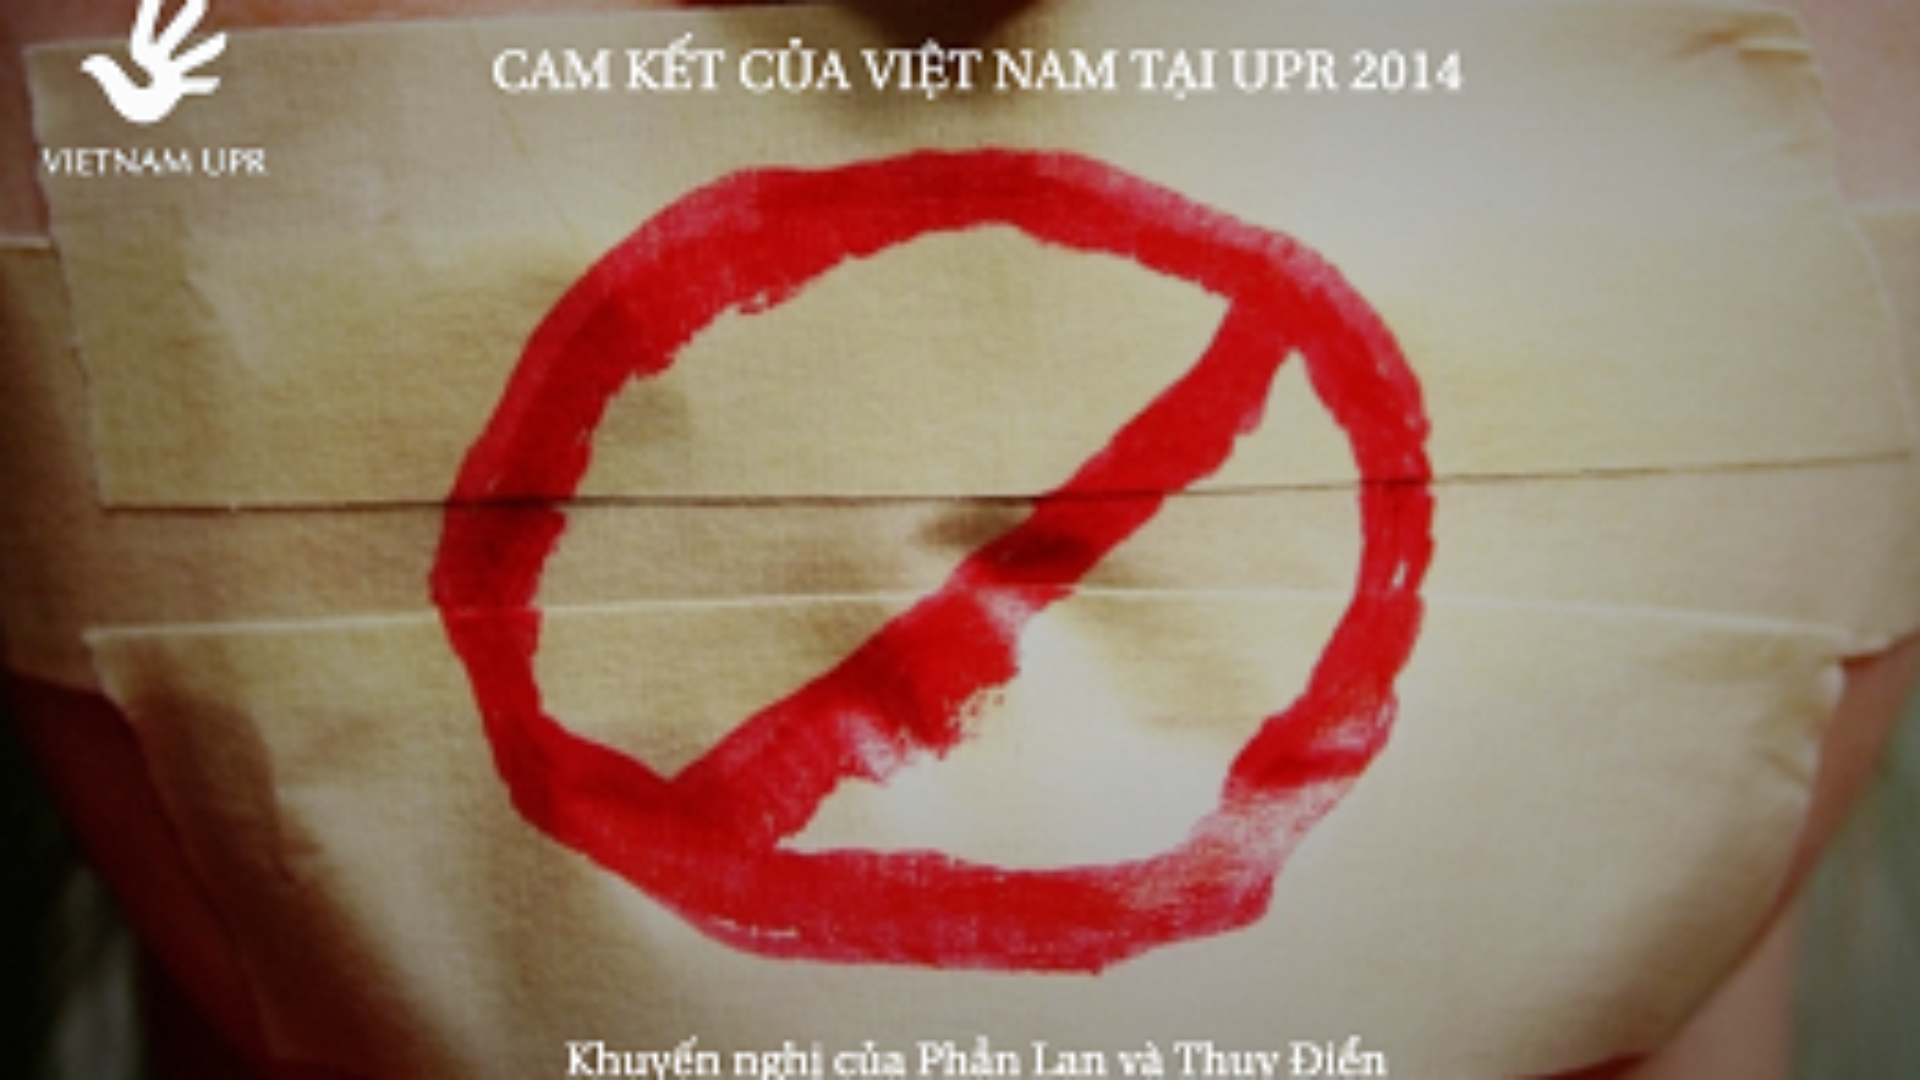 (Tiếng Việt) Bạn có biết: Cam kết của Việt Nam về Đảm bảo tự do ngôn luận tại UPR 2014?